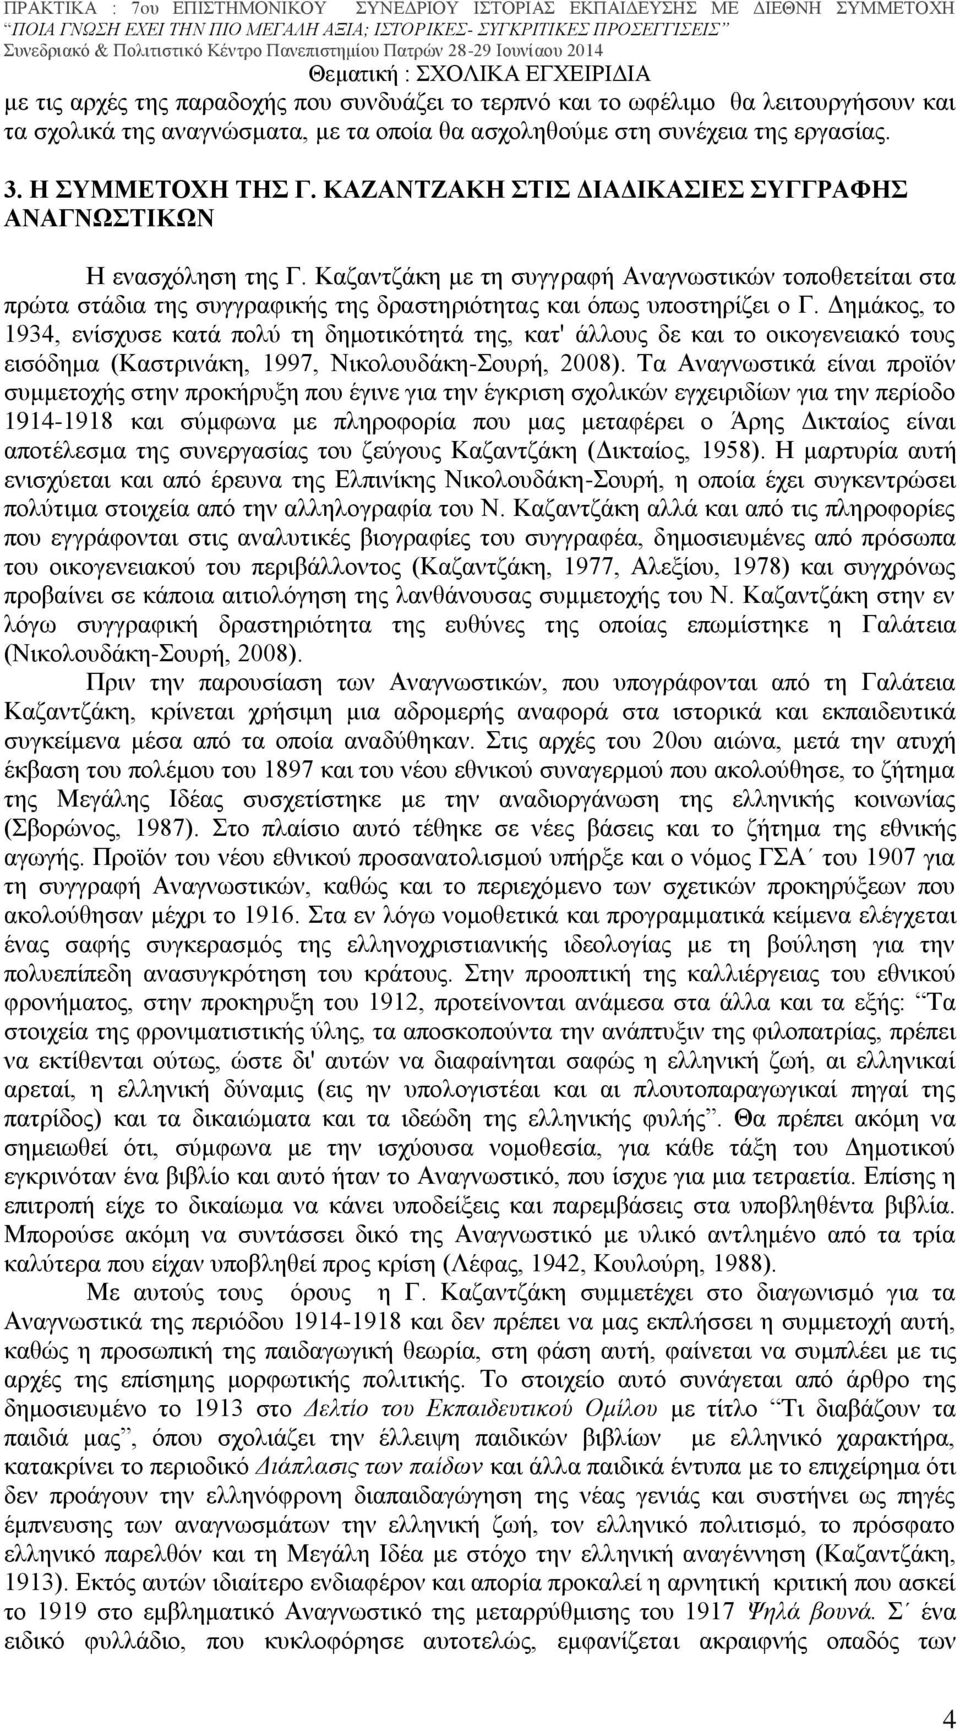 Δημάκος, το 1934, ενίσχυσε κατά πολύ τη δημοτικότητά της, κατ' άλλους δε και το οικογενειακό τους εισόδημα (Καστρινάκη, 1997, Νικολουδάκη-Σουρή, 2008).